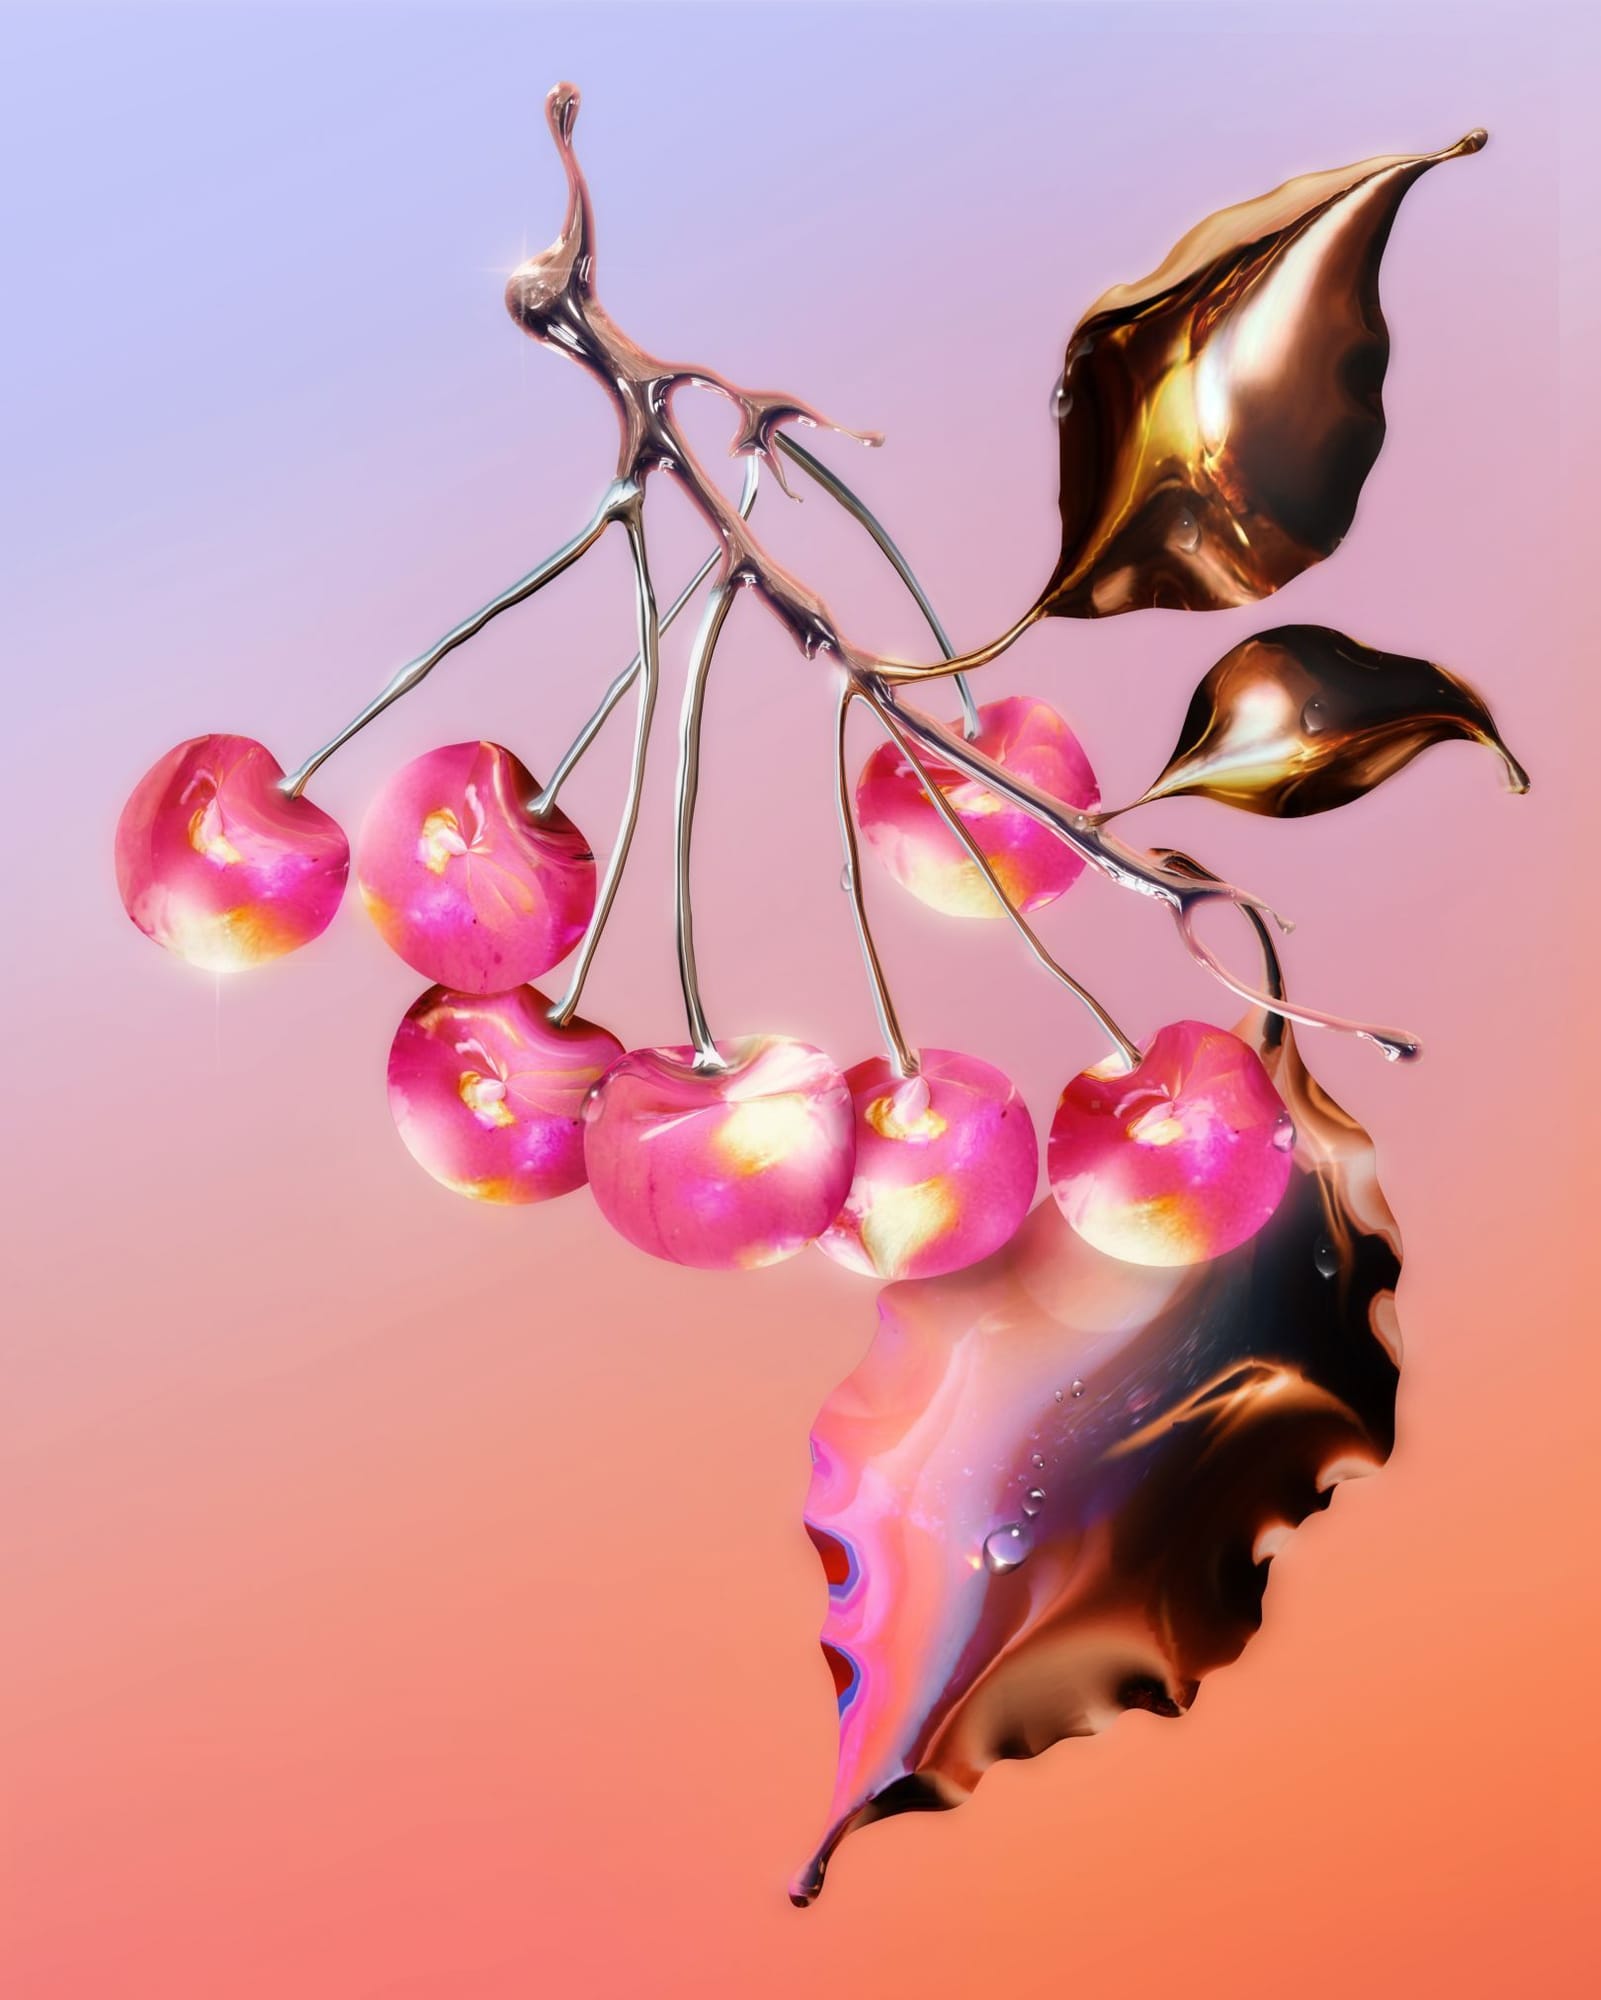 Digital, metallic cherries by graphic designer Alex Valentina.